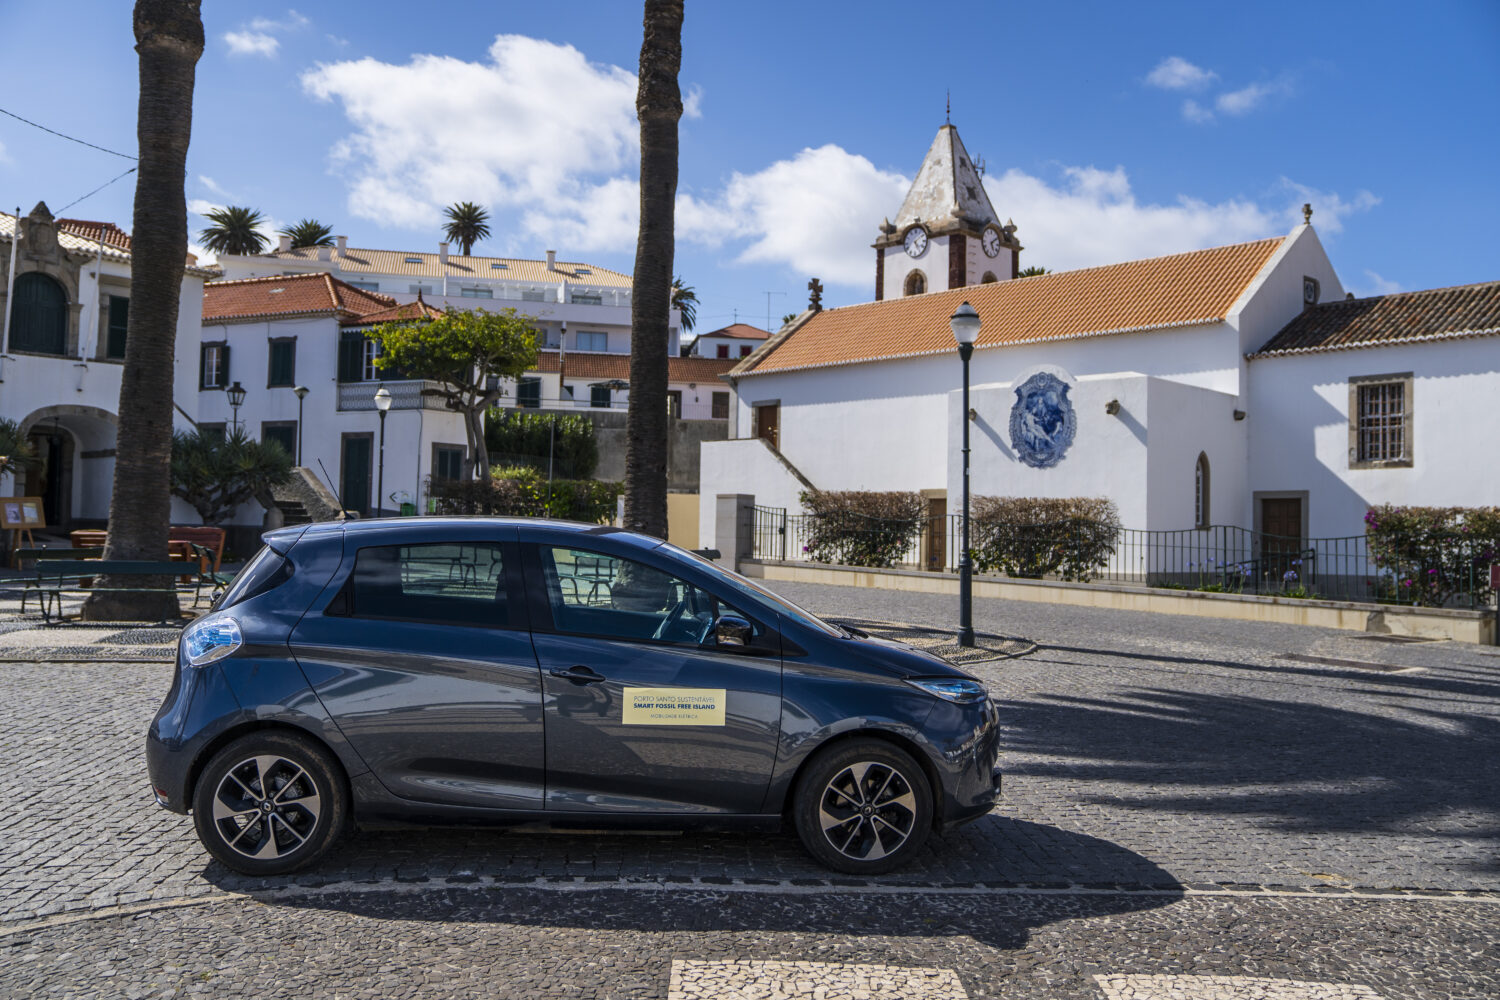 2019 - Ecosystème Porto Santo.jpg